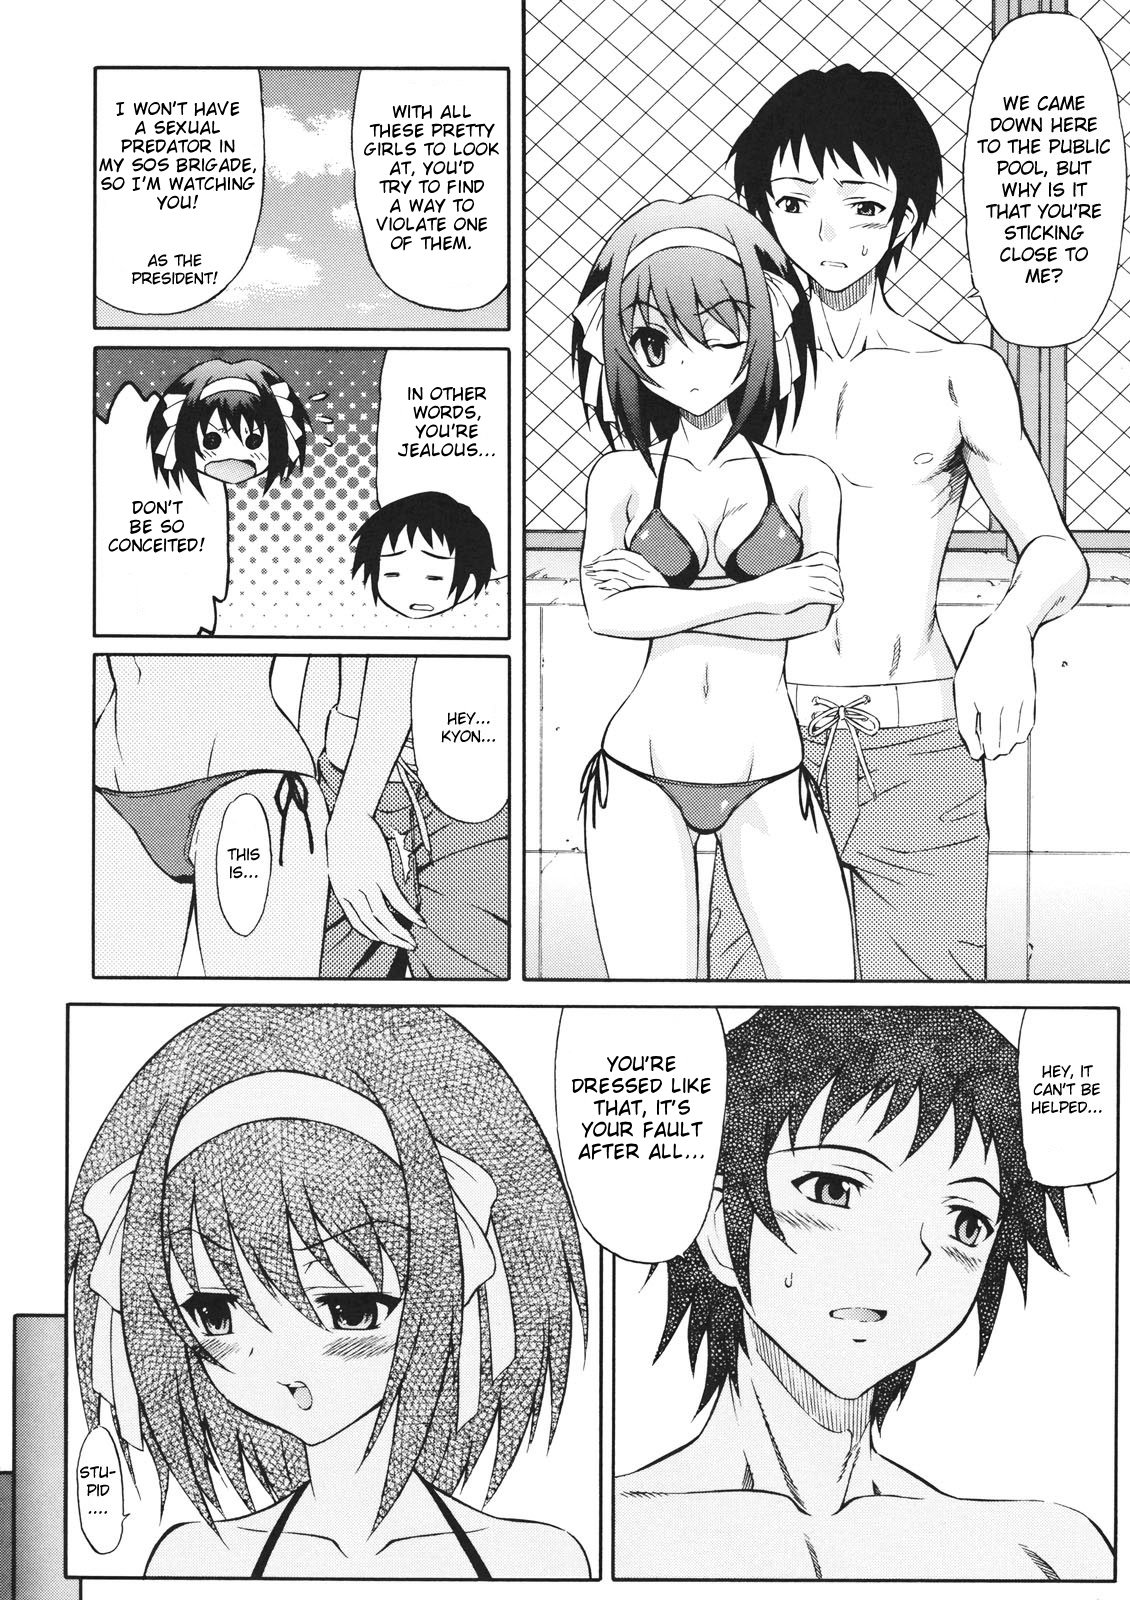 Haruhi suzumiya manga hentai